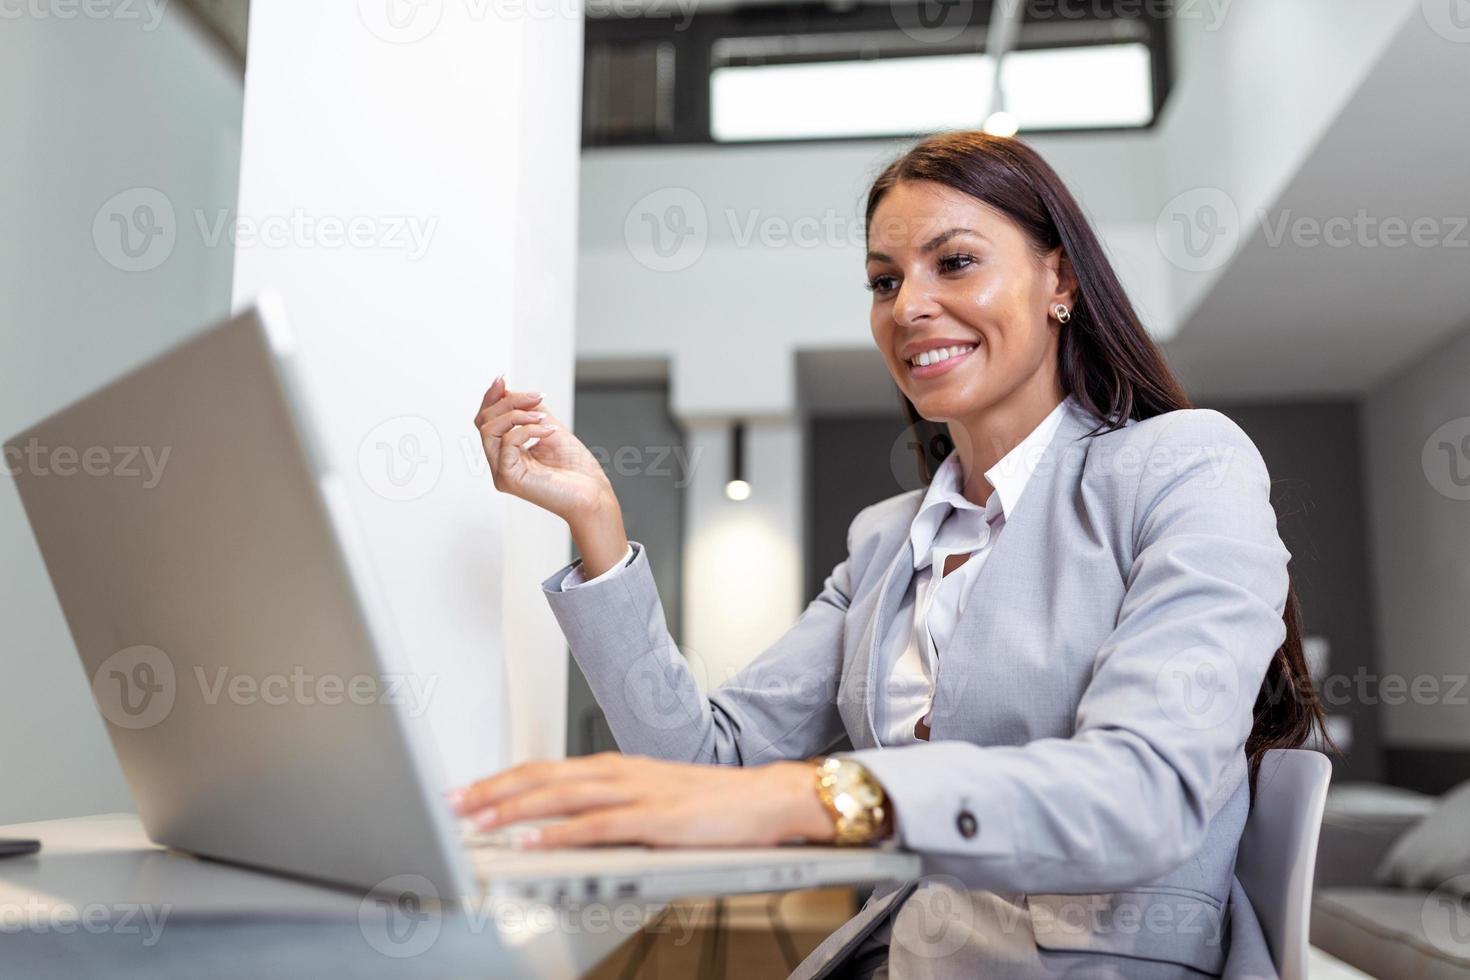 jeune femme travaillant à domicile, alors qu'elle était isolée en quarantaine pendant la crise sanitaire du covid-19. portrait d'une belle jeune femme d'affaires souriant et regardant un écran d'ordinateur portable photo